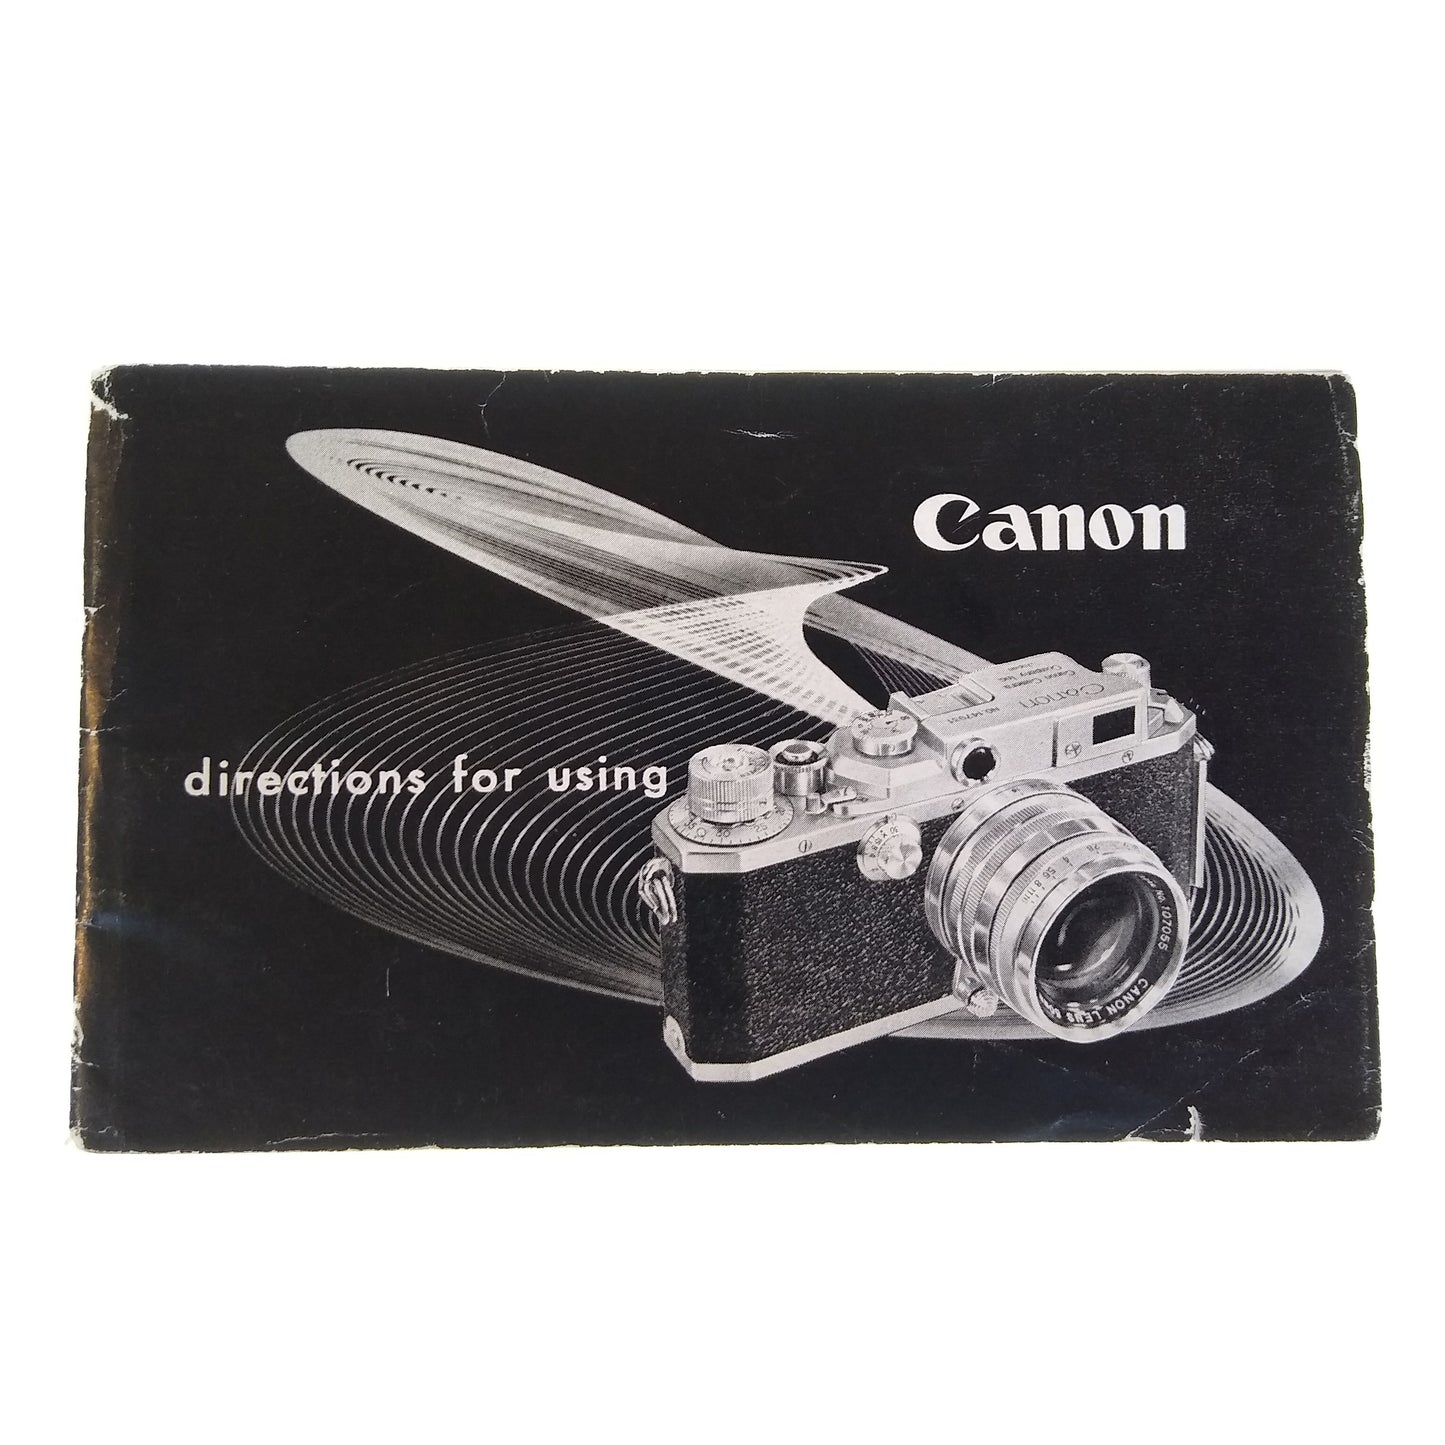 Canon IVSB2 Instruction Manual.